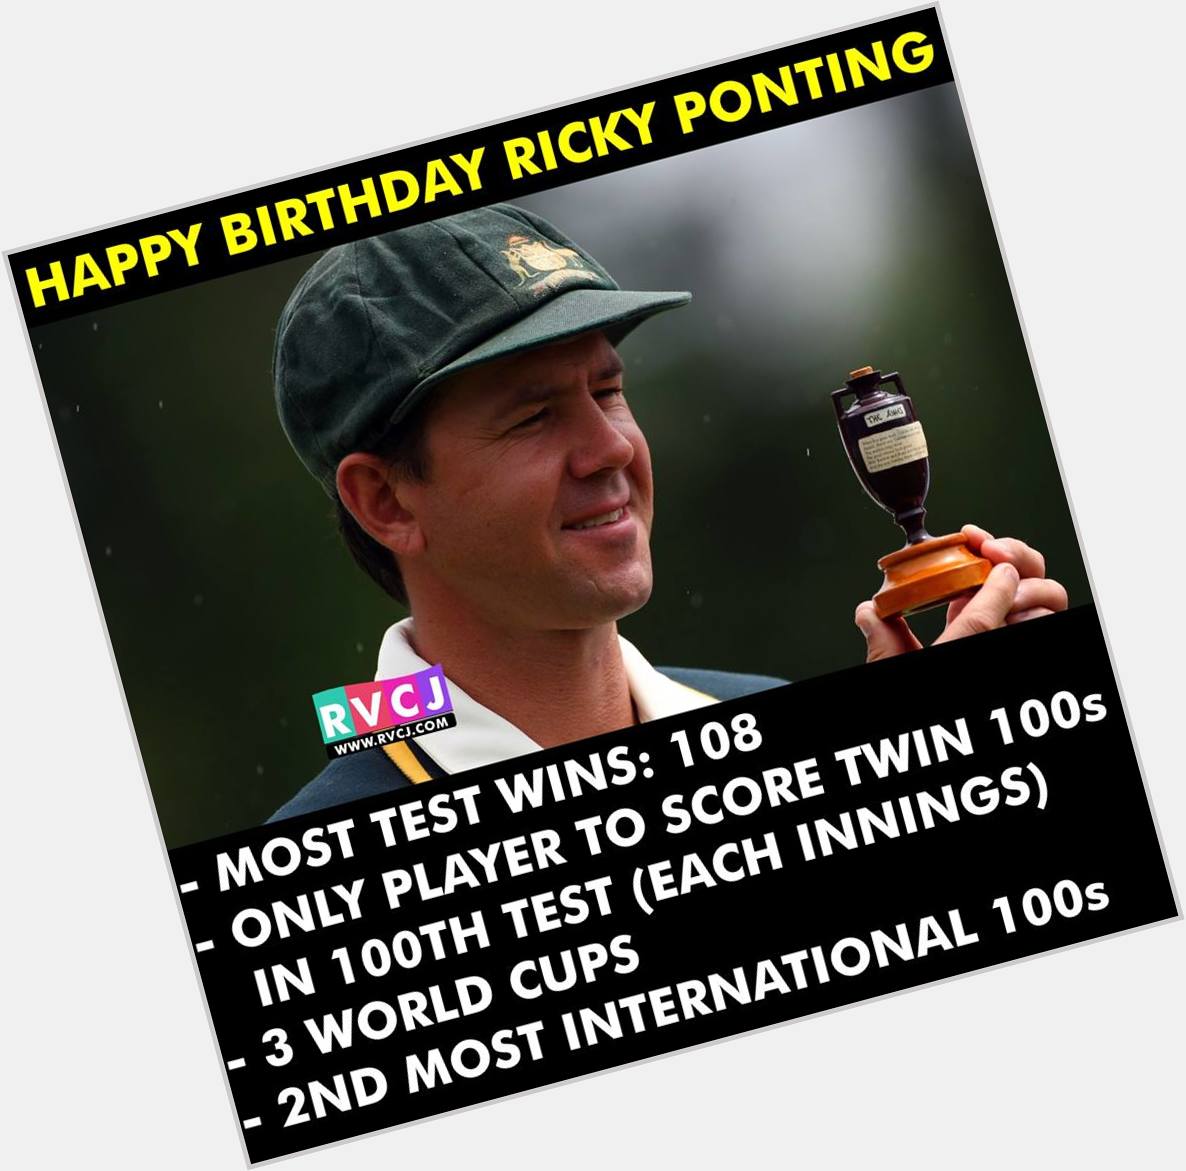 Happy Birthday Ricky Ponting 